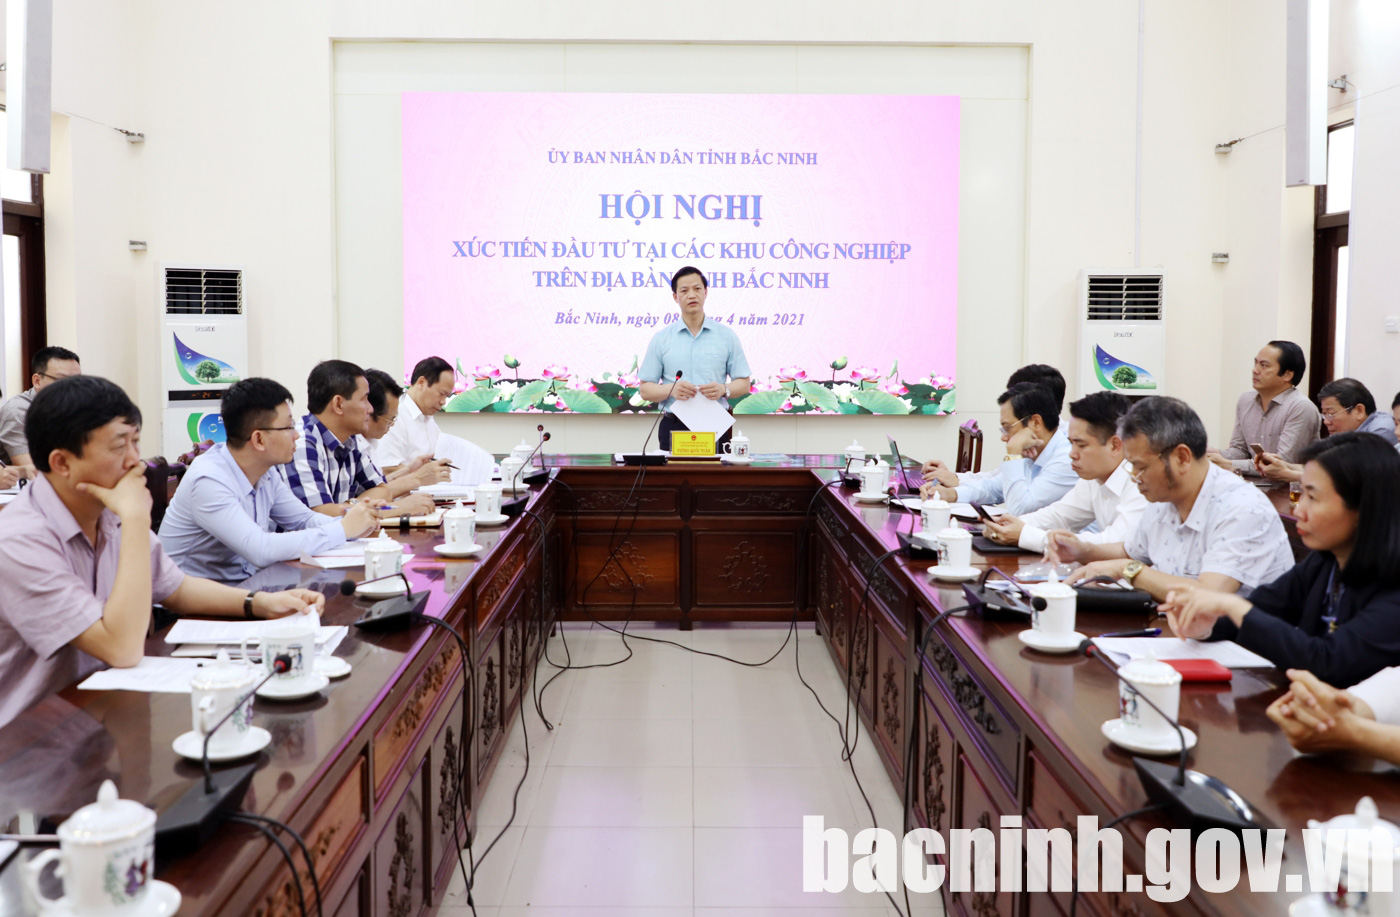 Sẽ tổ chức hội nghị xúc tiến đầu tư tỉnh Bắc Ninh vào tháng 5/2021 - Ảnh 1.